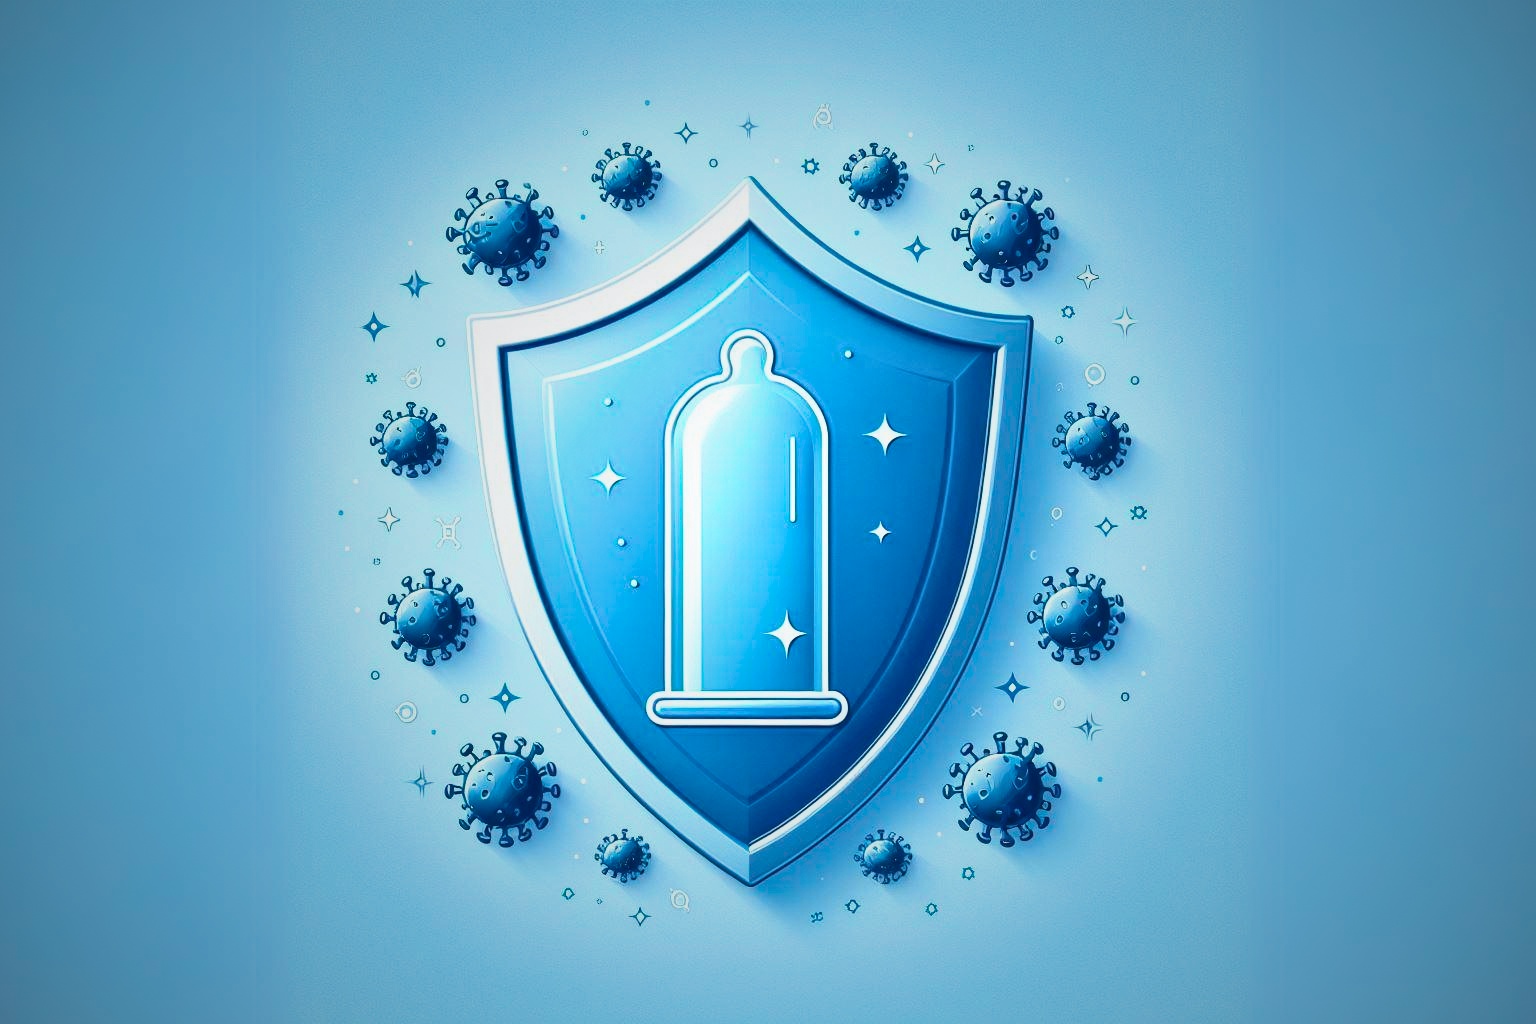 Escudo protetor com preservativo, simbolizando a proteção que o preservativo oferece contra doenças e gravidez